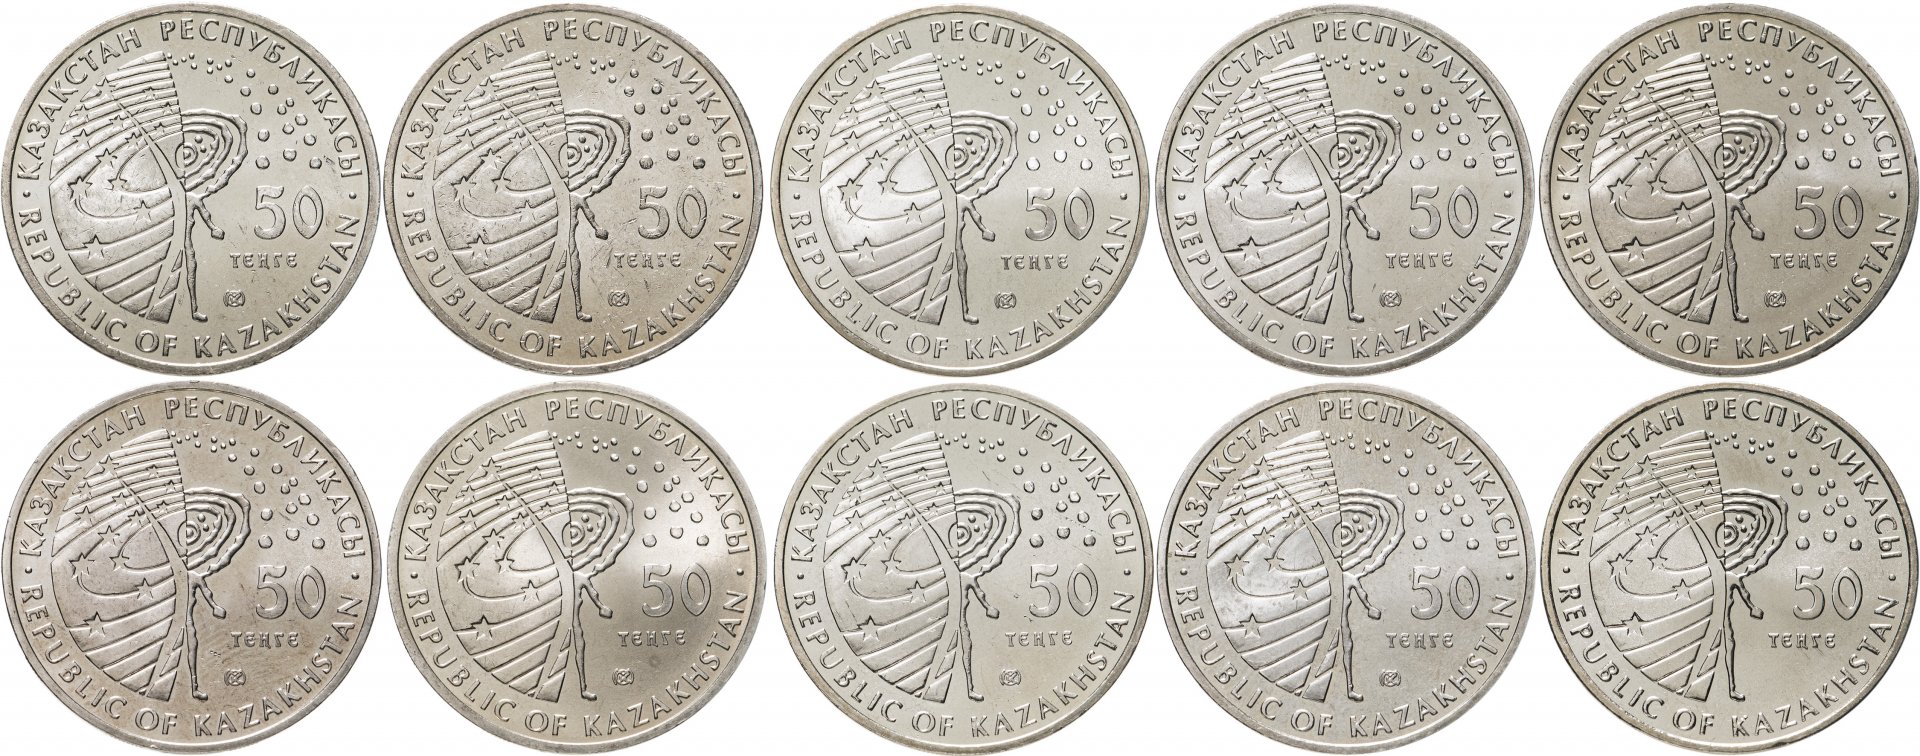 8500 тг в рублях. Казахстан - 50 тенге (2006 г.). Монеты 50 тенге 2020 года. Казахстан набор монет Сакский стиль.